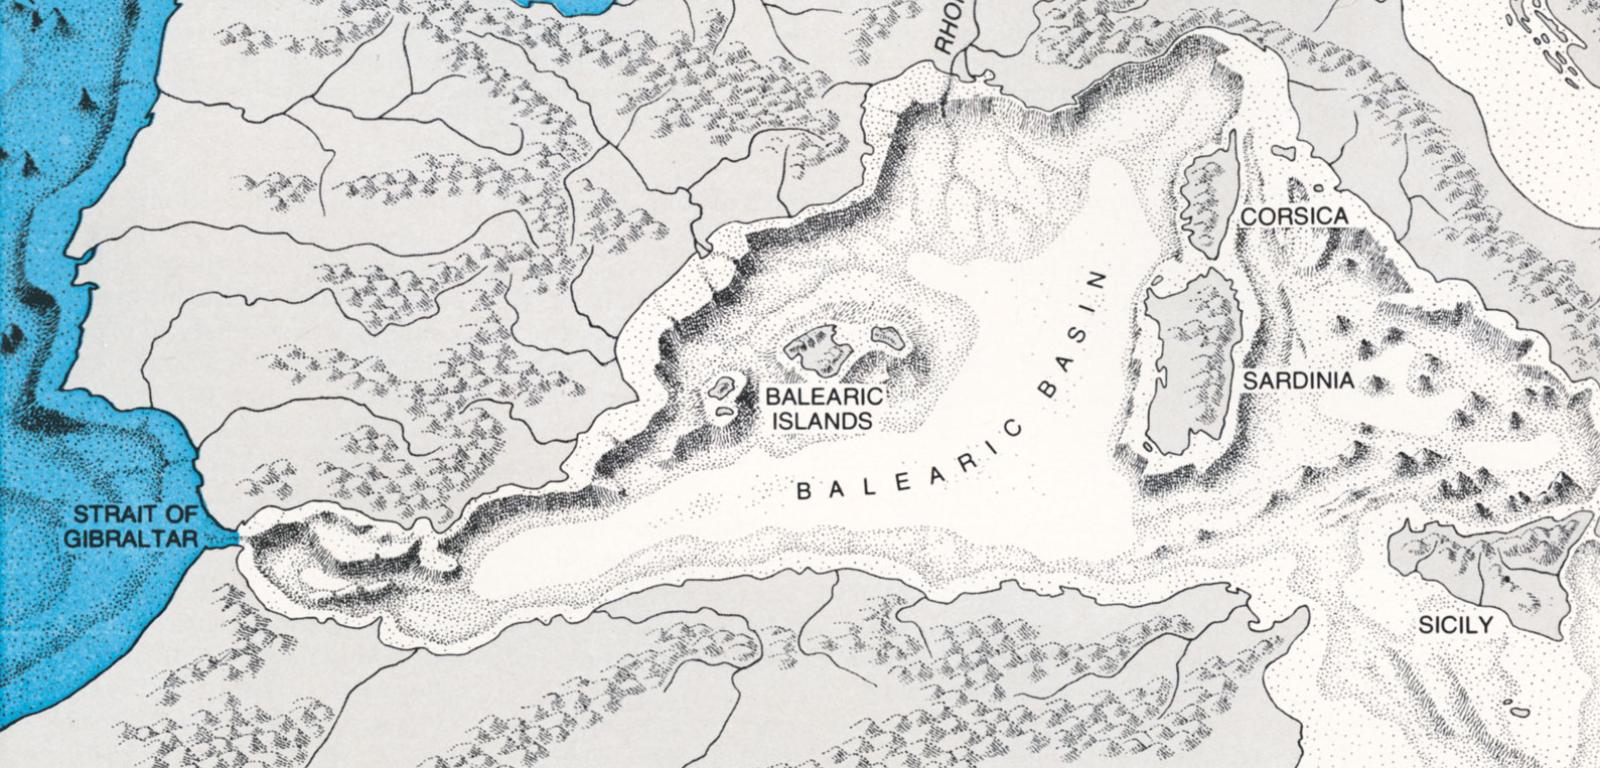 1972, pustynne morze: „Morze Śródziemne przed 6 mln lat musiało wyglądać mniej więcej tak, jak na tej mapie, gdy zamiast wody była tu olbrzymia pustynia położona ponad 3 km poniżej poziomu oceanu. Około 5,5 mln lat temu Atlantyk wlał się do tego olbrzymiego basenu poprzez Cieśninę Gibraltarską, w której utworzył się gigantyczny wodospad. W ciągu kilku tysięcy lat śródziemnomorska wanna wypełniła się wodą po same brzegi”.